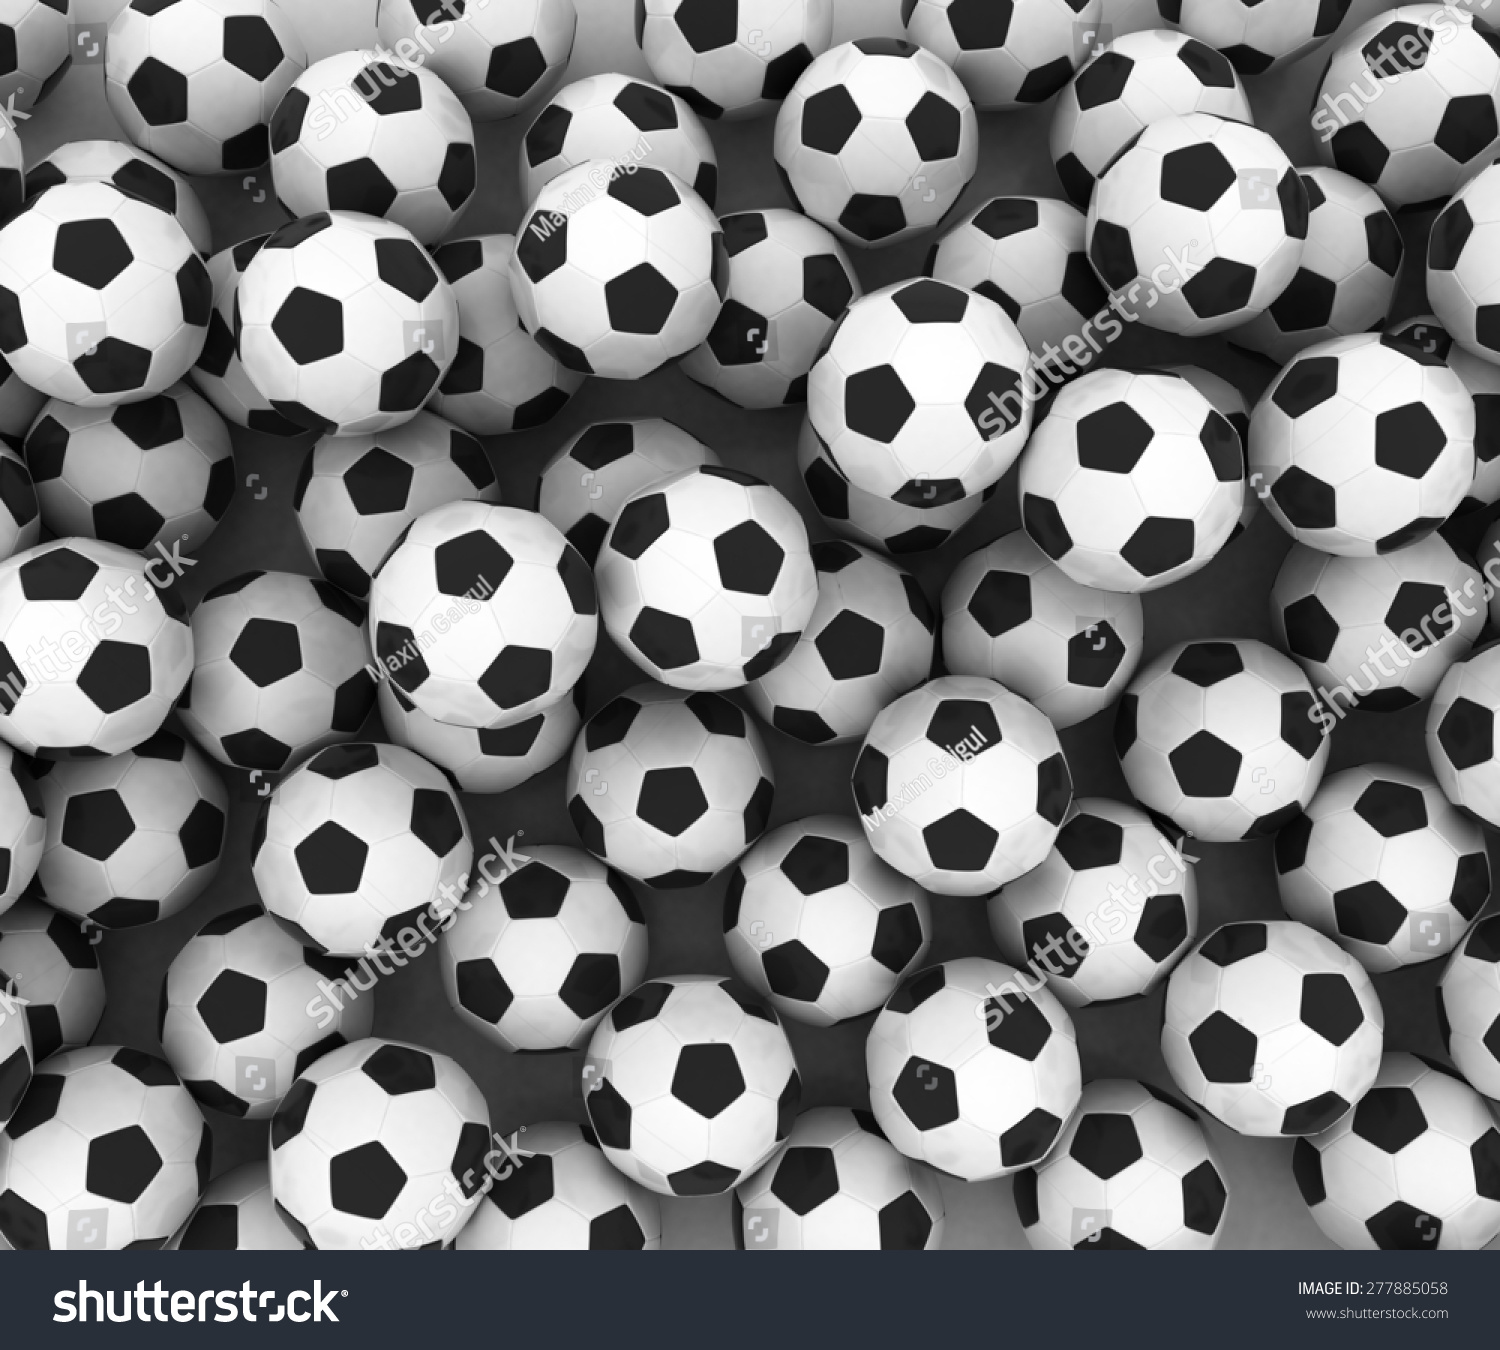 Soccer Ball Soccer Game Balls Texture Stock Illustration 277885058 ...